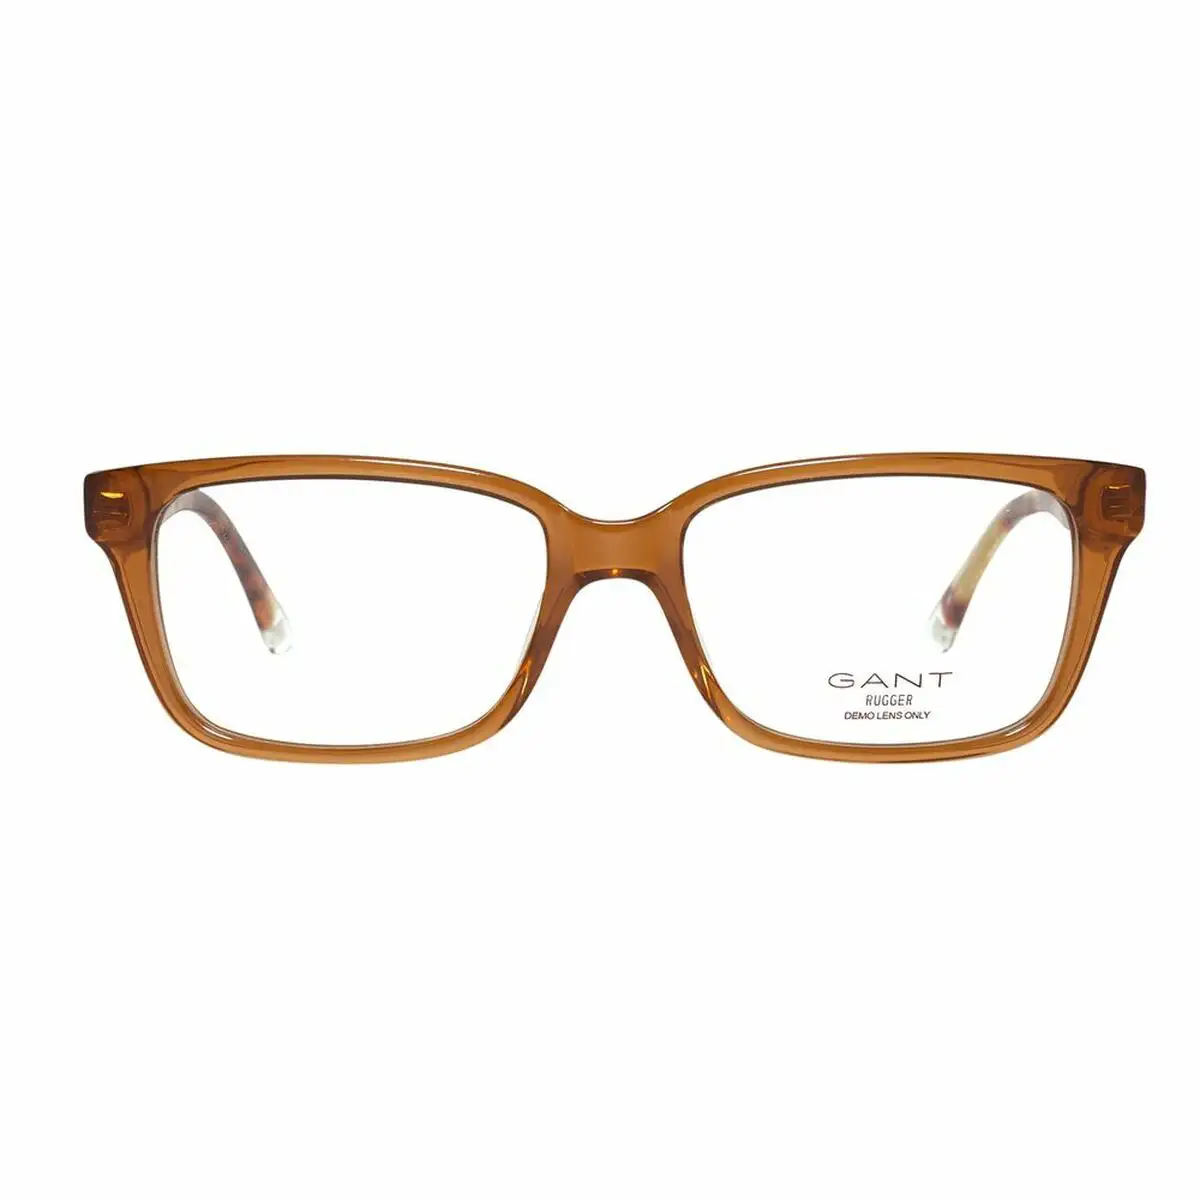 Monture de lunettes homme gant gra092 52d96_2617. DIAYTAR SENEGAL - Votre Escapade Shopping Virtuelle. Explorez notre boutique en ligne et dénichez des trésors qui évoquent la culture et le savoir-faire sénégalais, un clic à la fois.